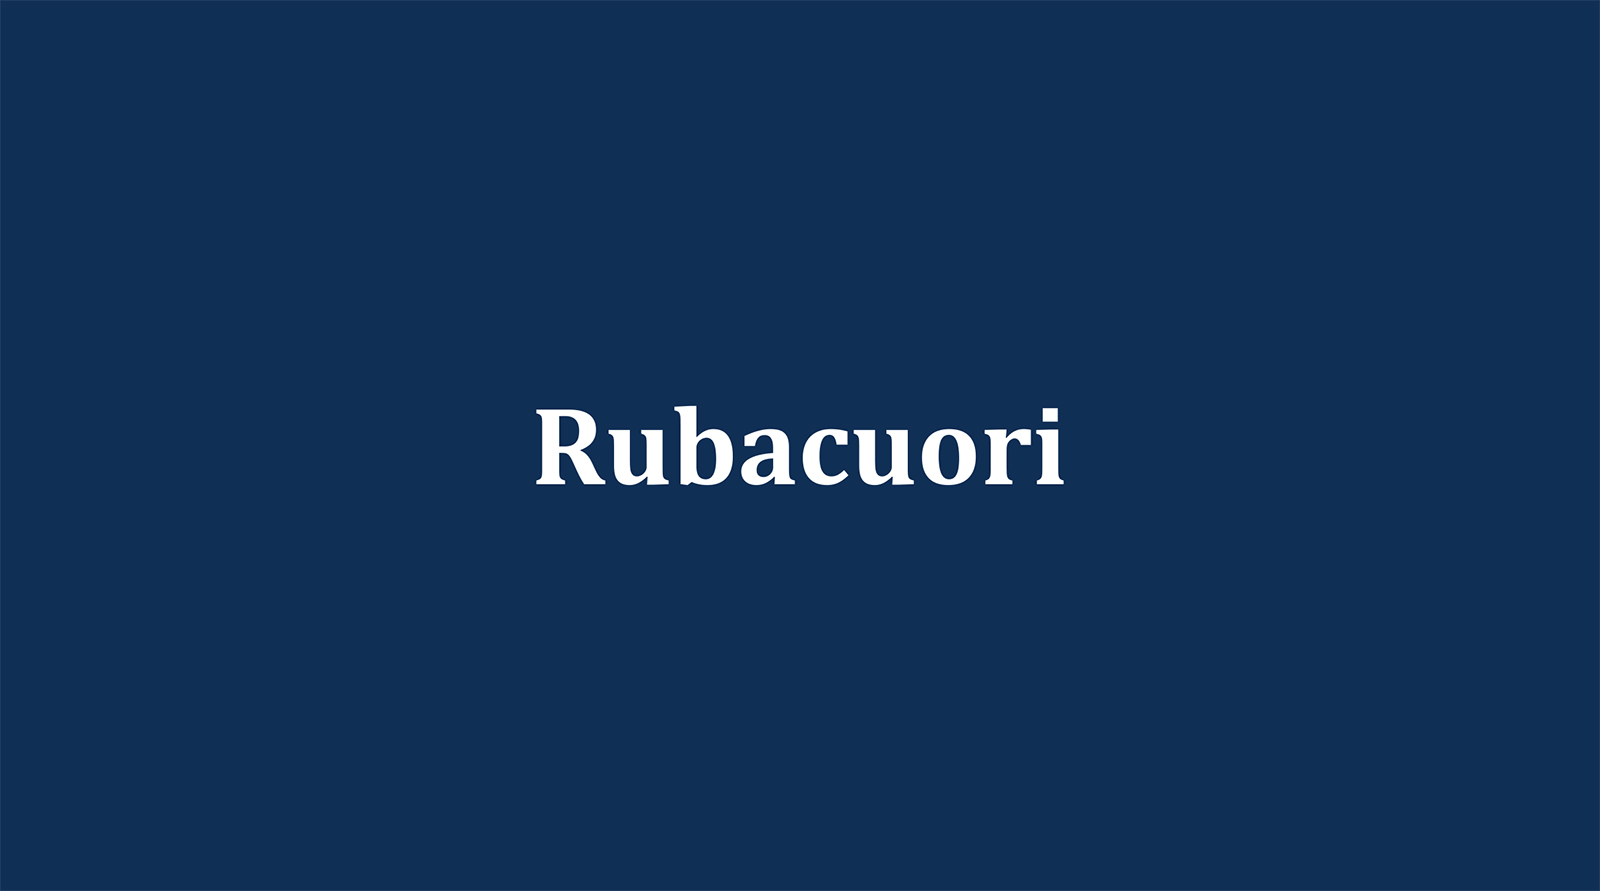 Rubacuori（ルバクオーリ）